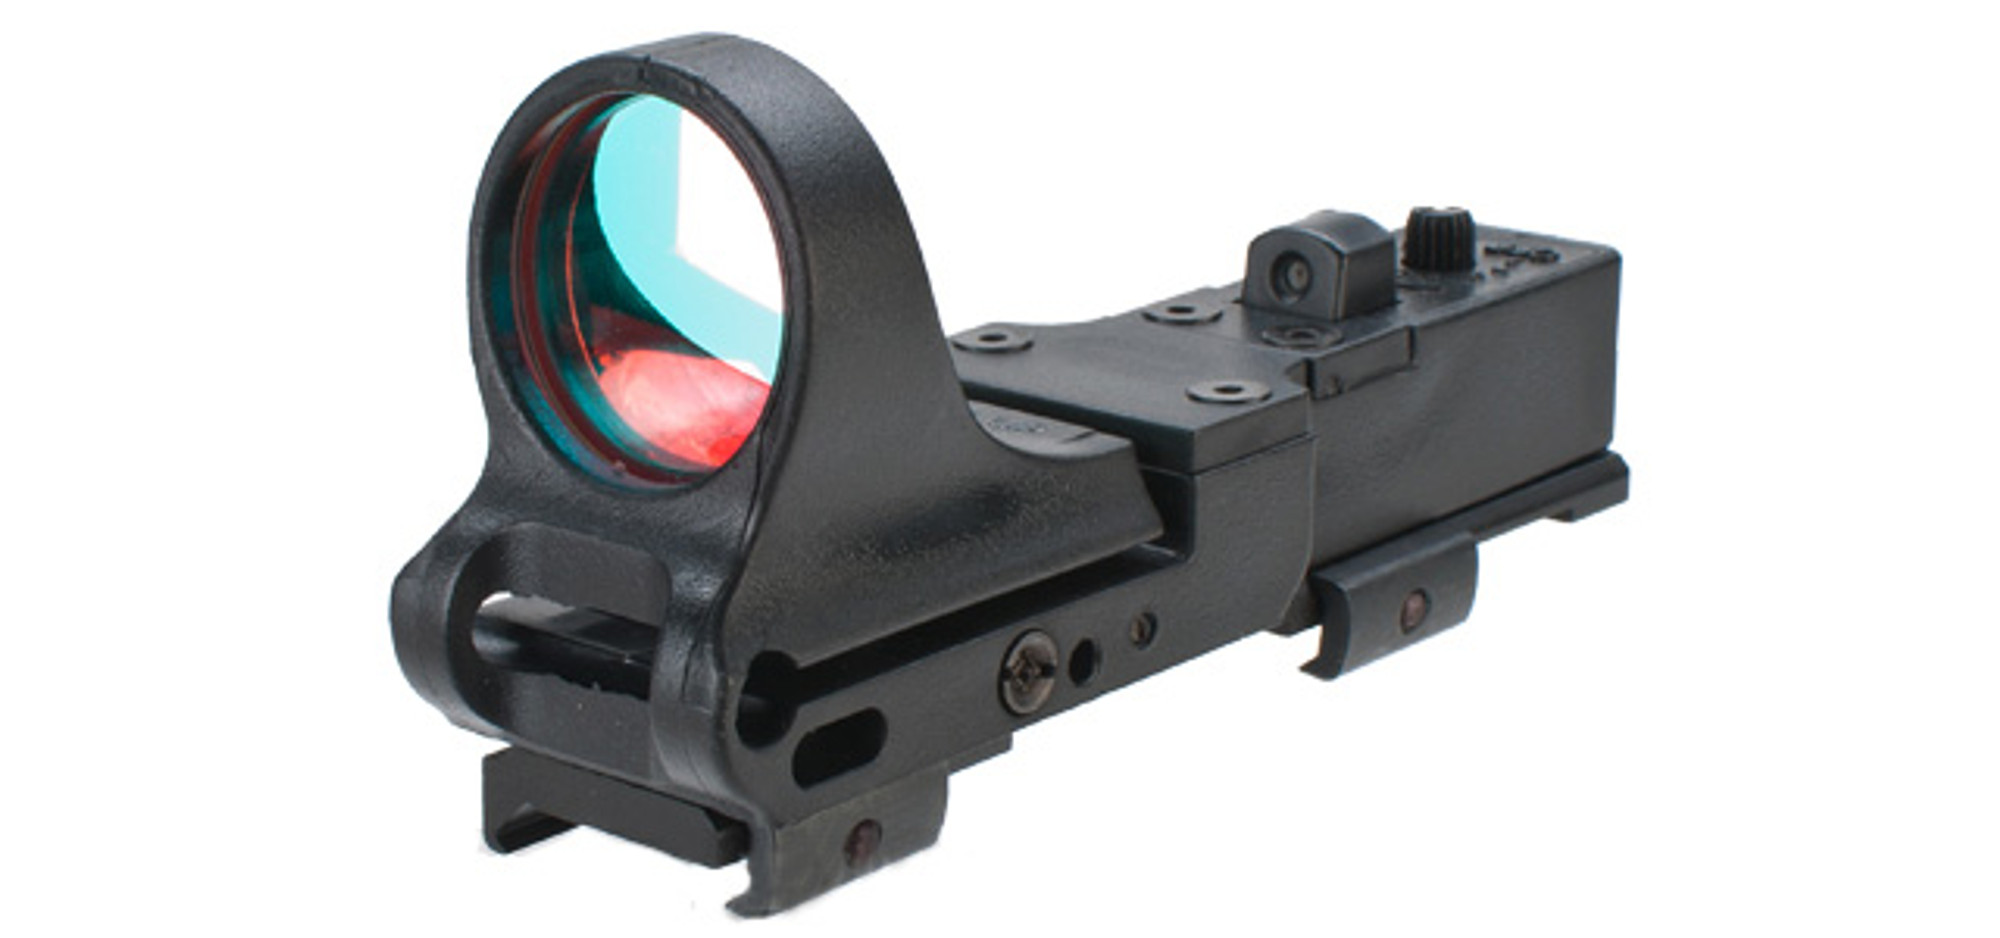 RD Dynamics Picatinny Rail Mounted Red Dot Sight - Black